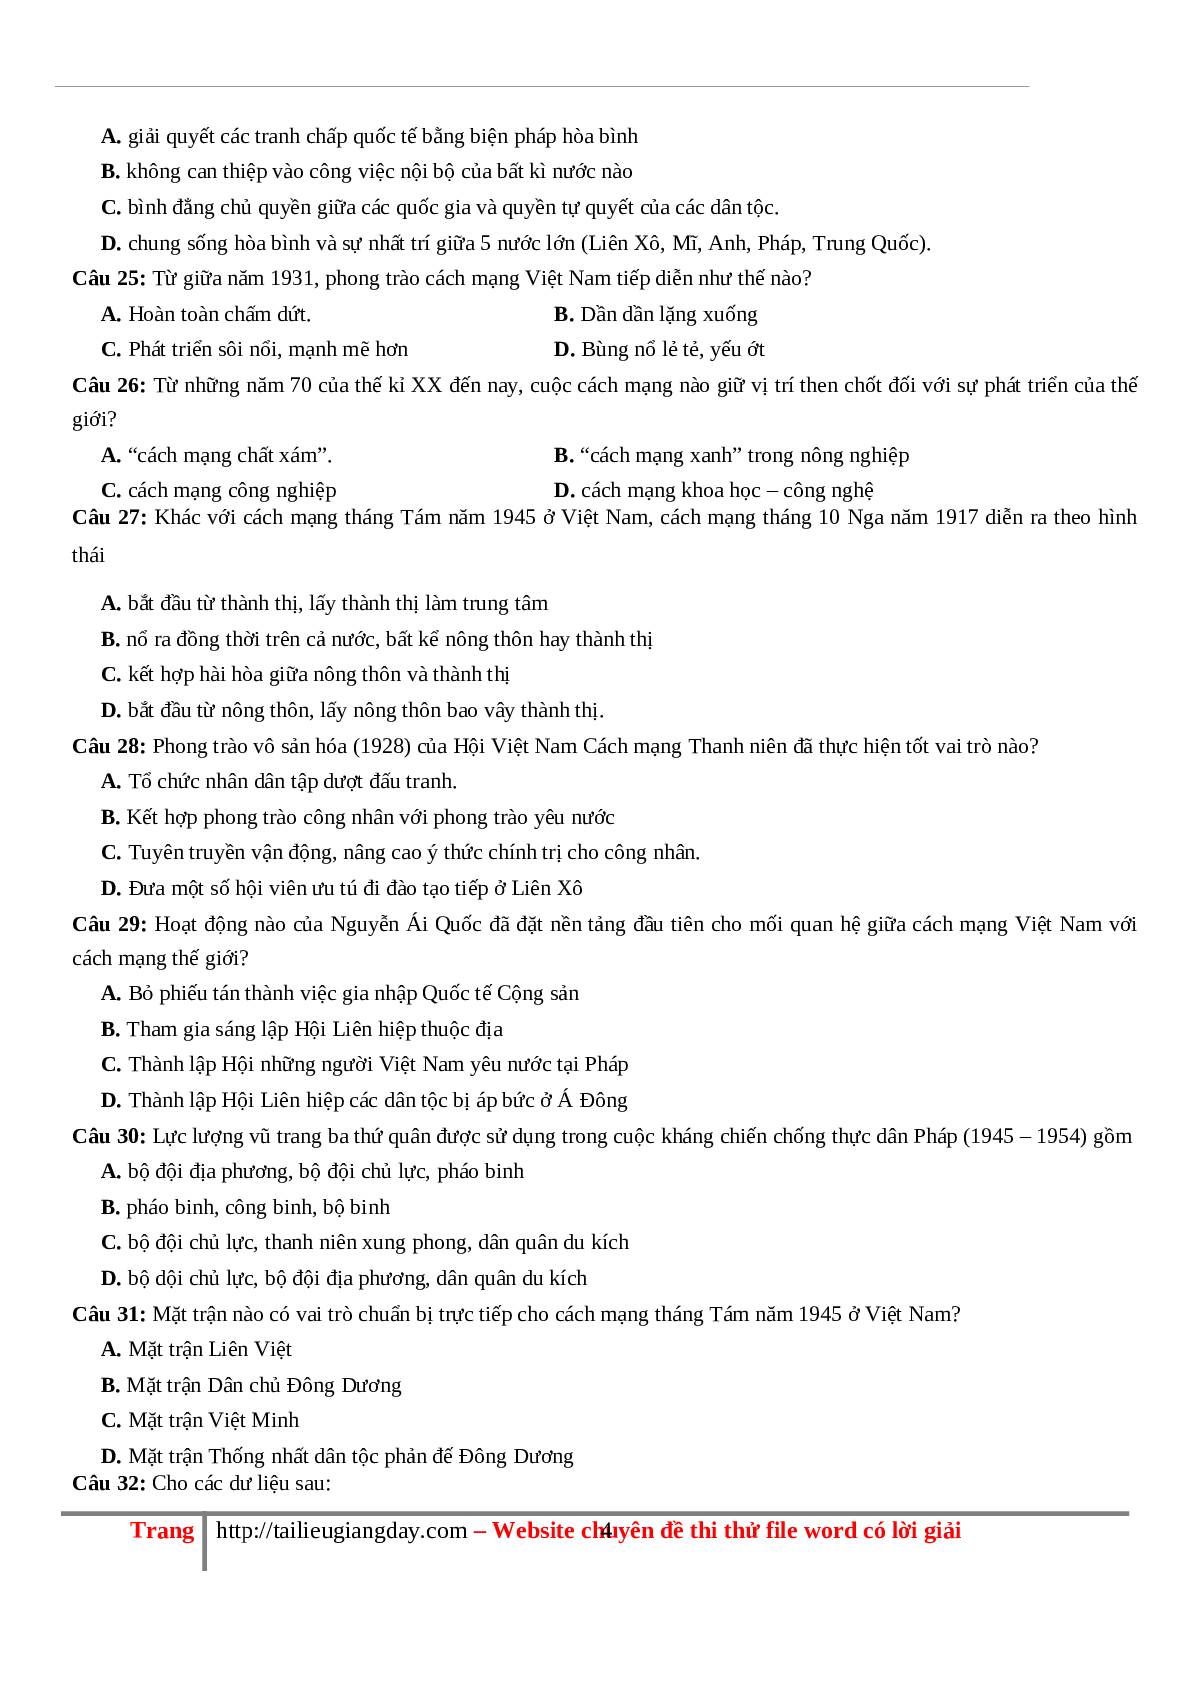 70 câu hỏi ôn tập hay - Lịch Sử 12 (trang 4)